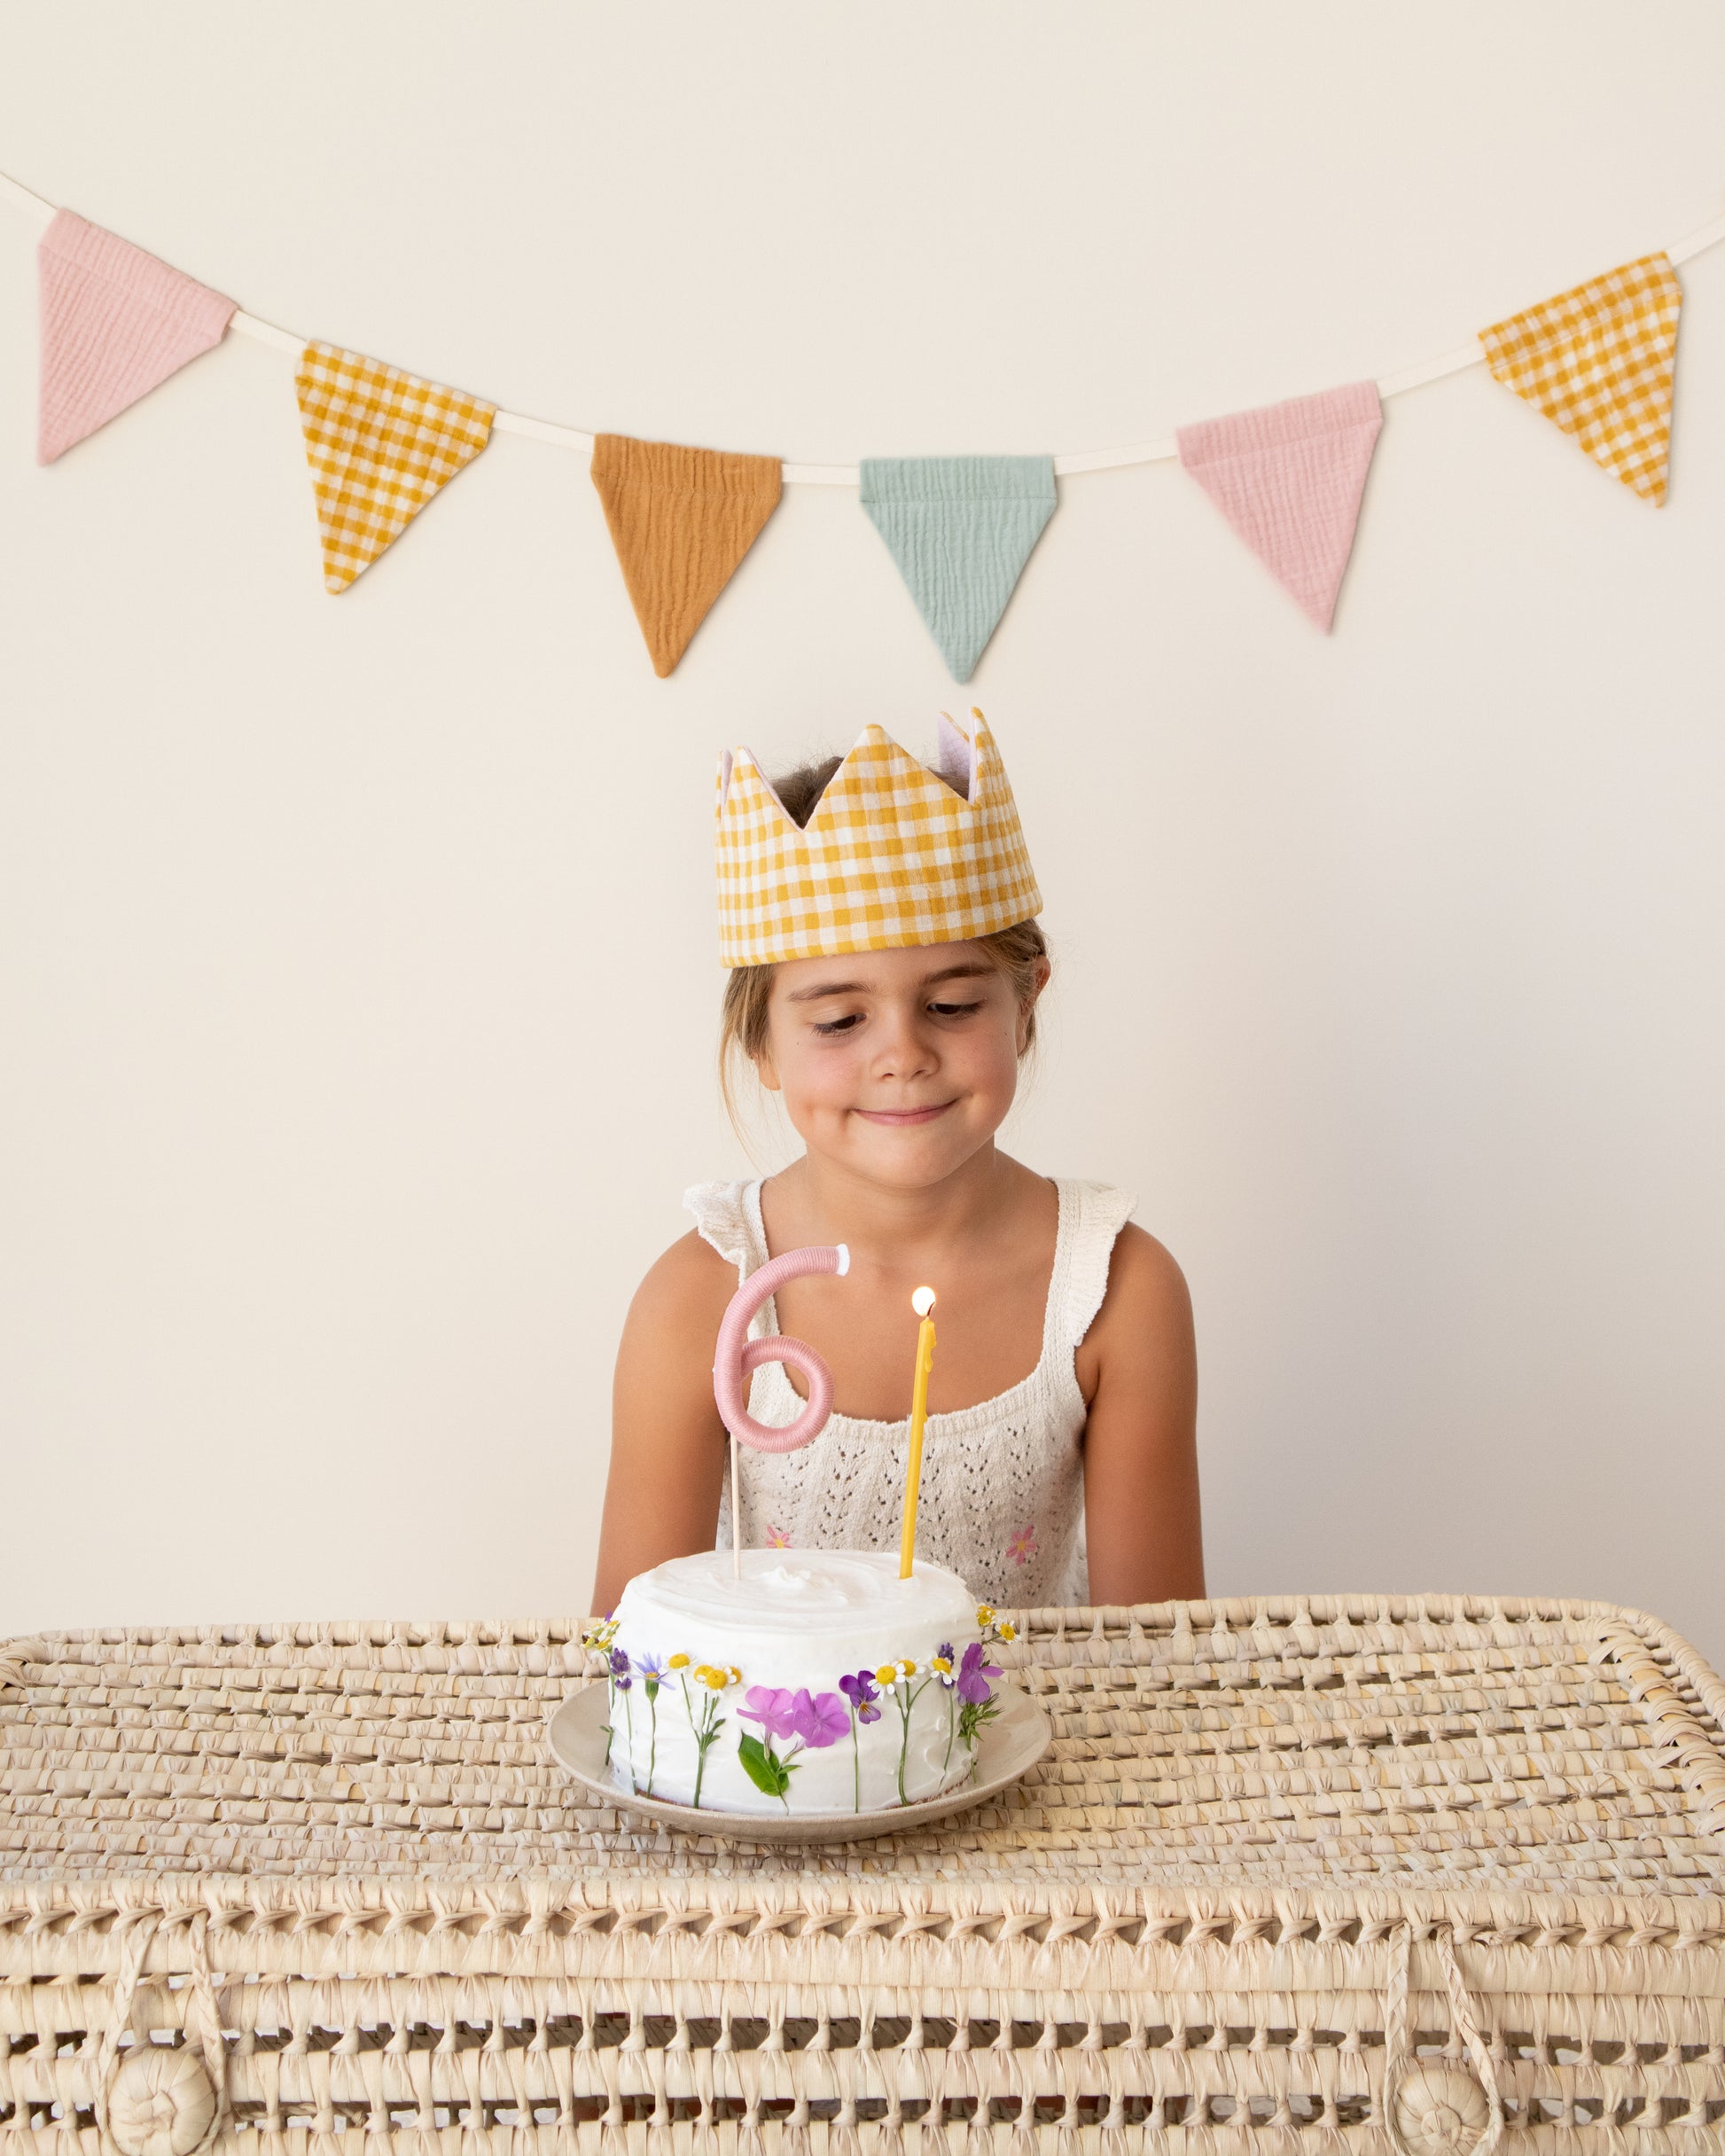 Coroa de aniversário reversível em musselina vichy mostarda, bolo florido com um topper número 6 e uma vela de cera de abelha amarela, grinalda com bandeirolas coloridas em musselina